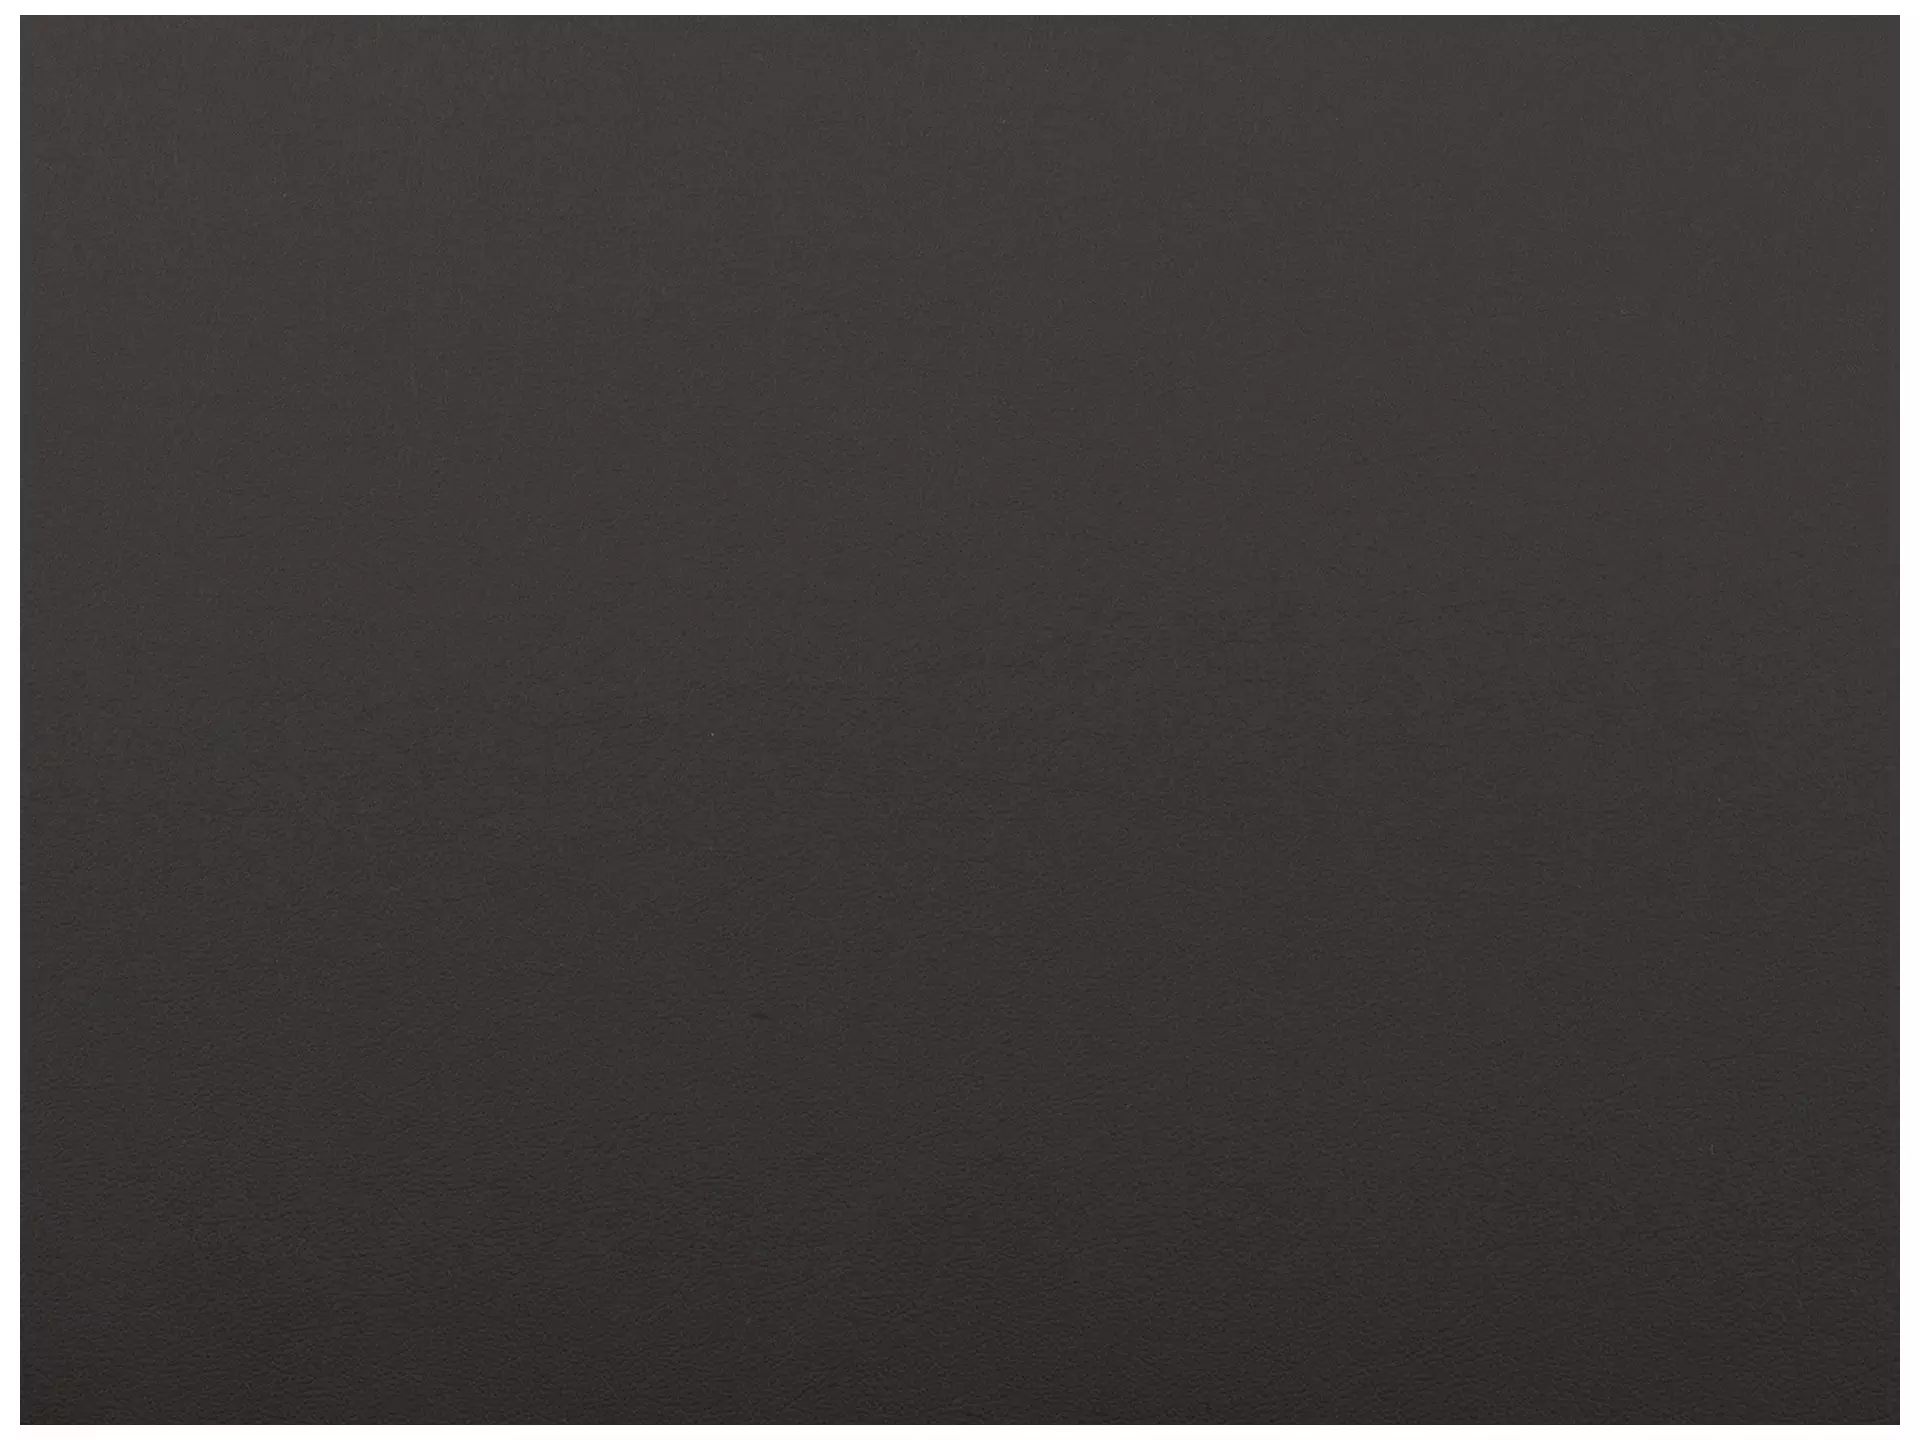 Sofa Shetland B: 188 cm Polipol / Farbe: Anthrazit / Bezugsmaterial: Leder